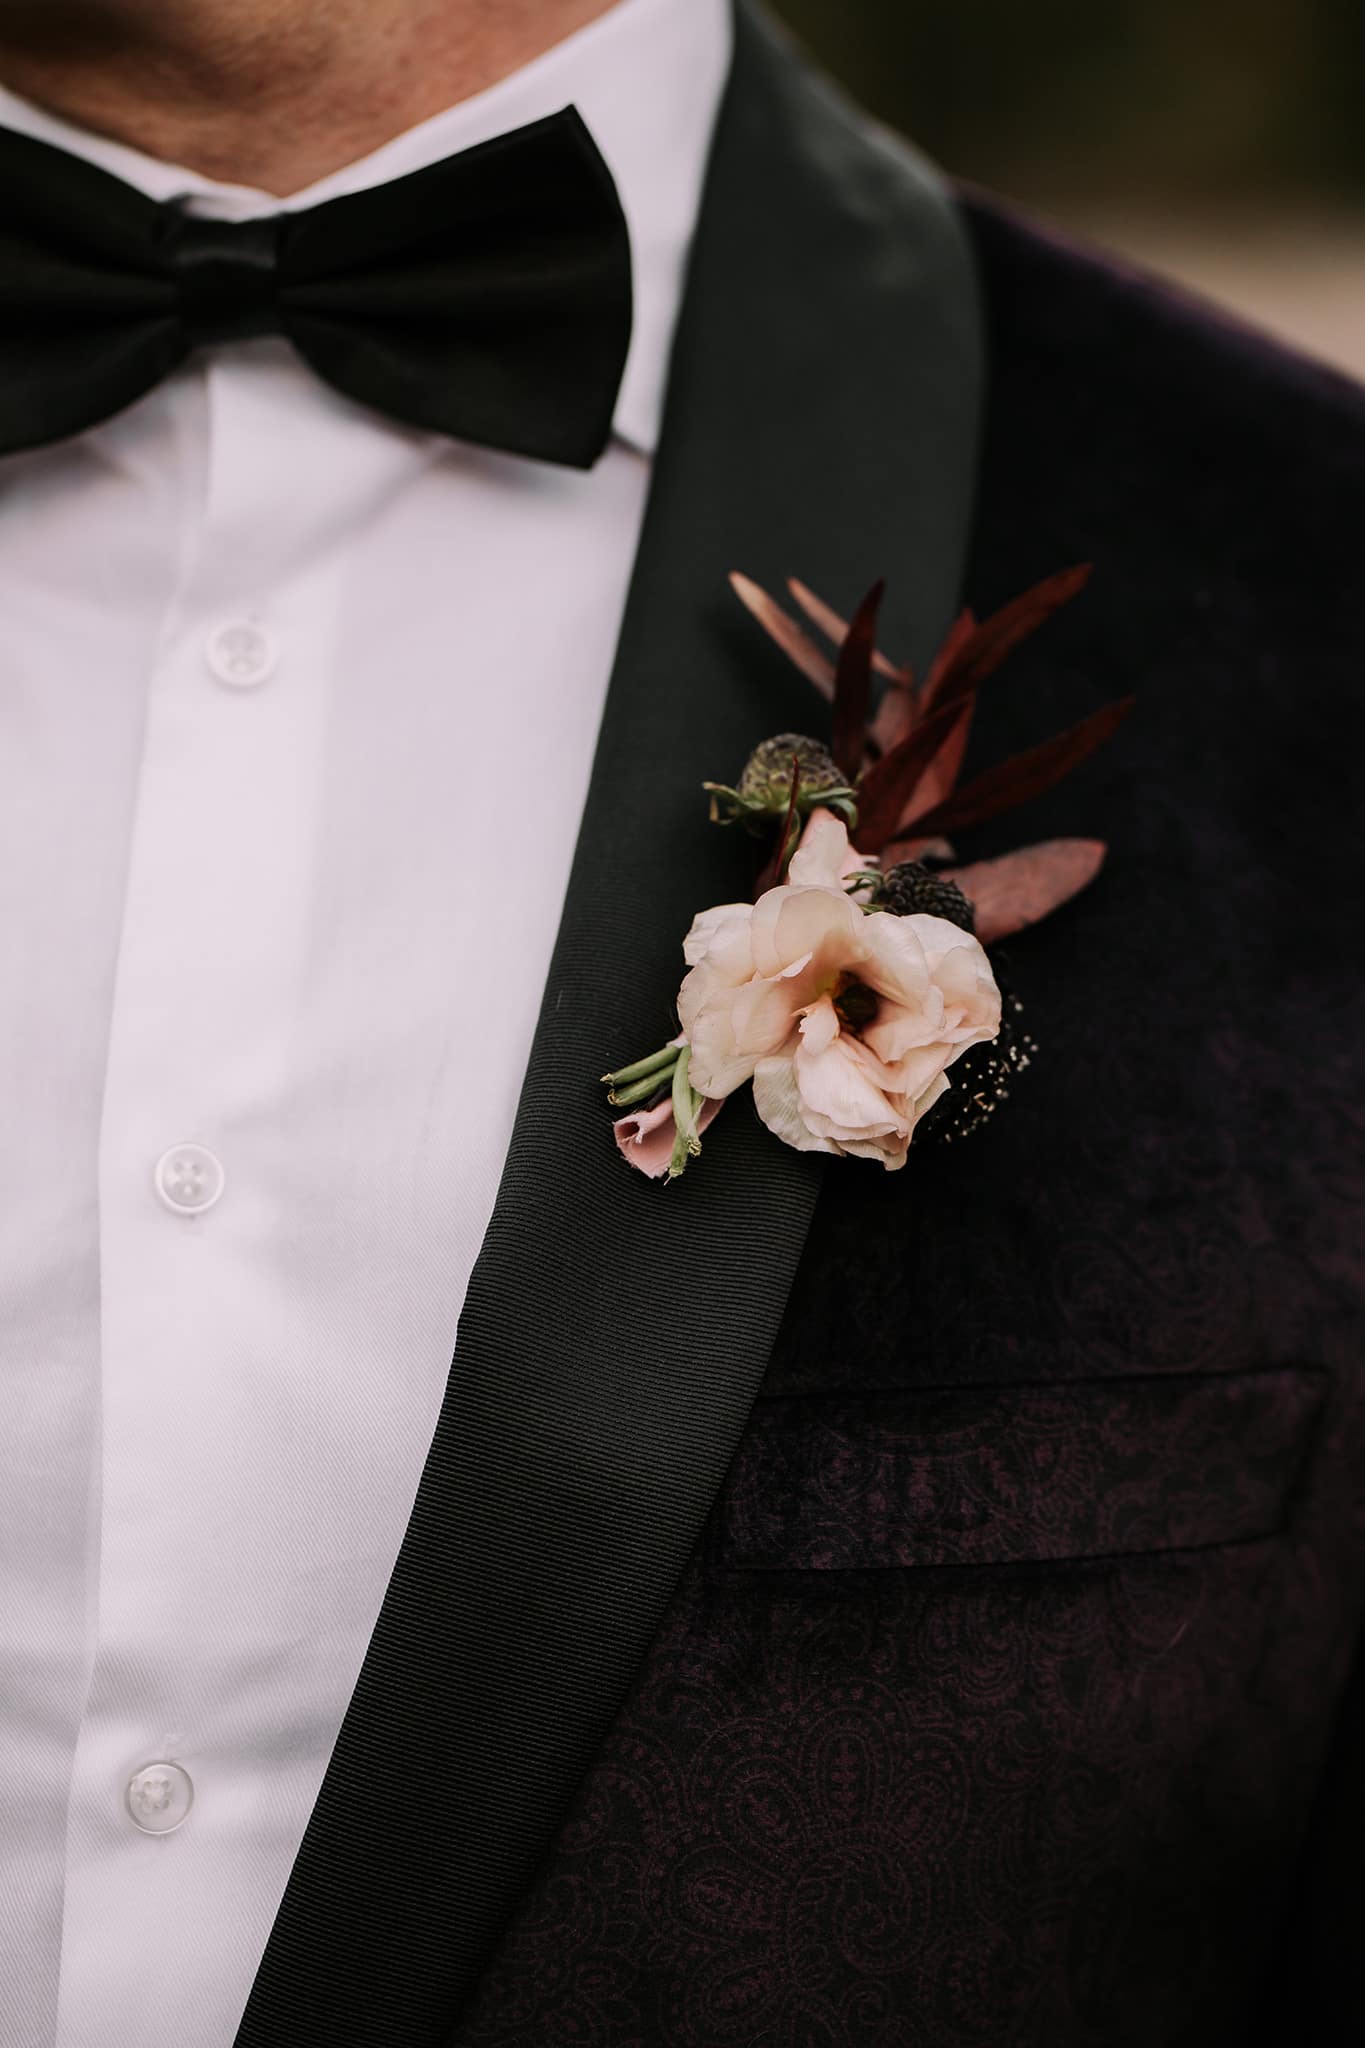 dark moody wedding details inspiration boutonniere white burgundy